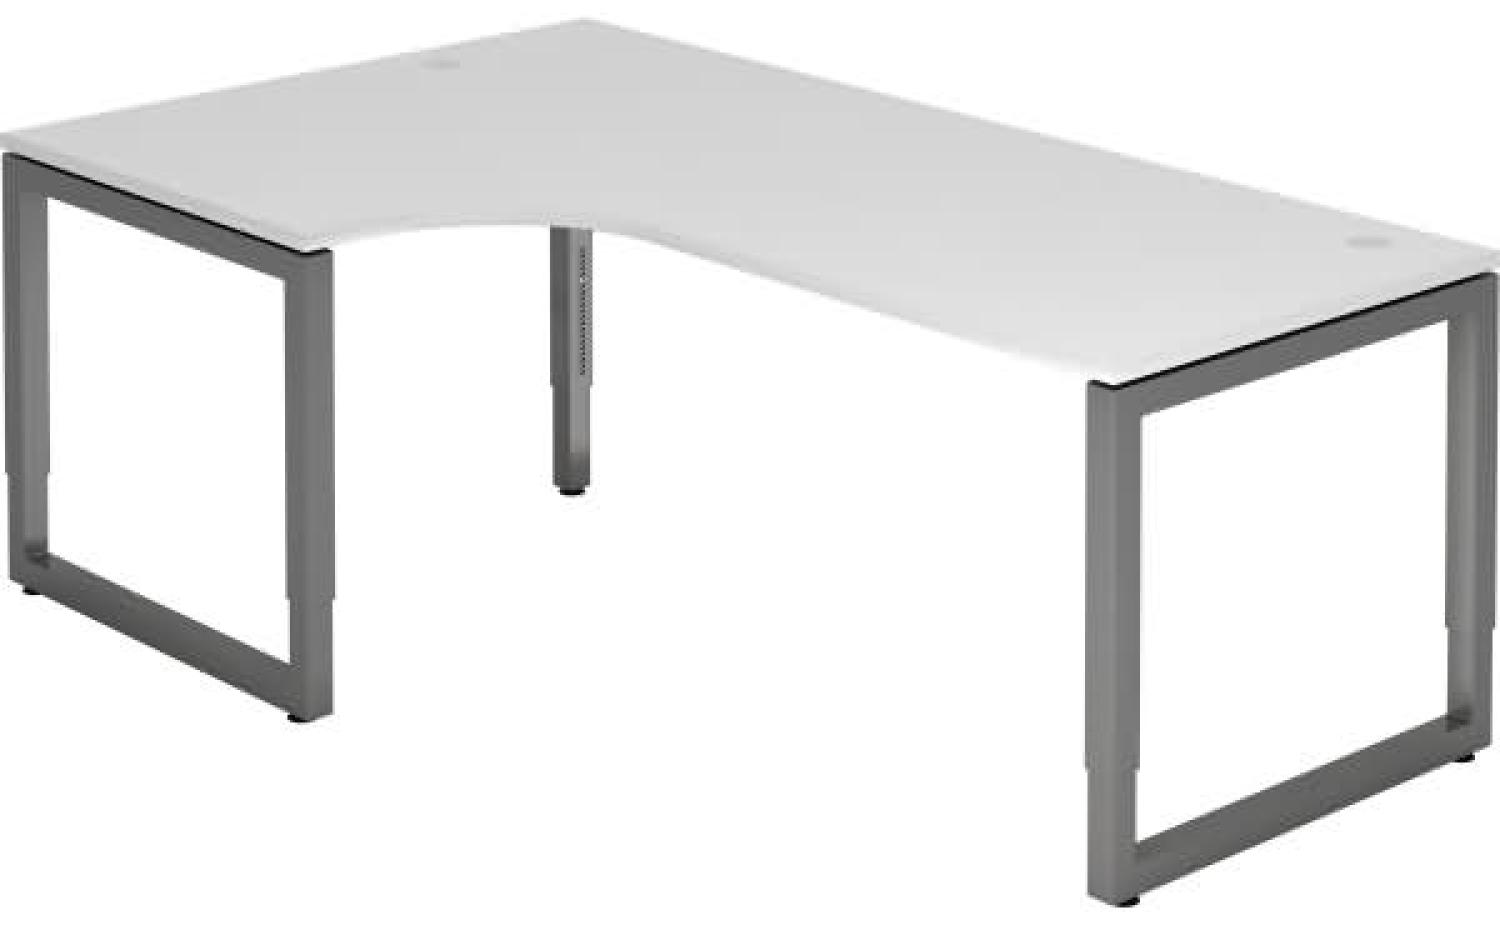 Winkeltisch O-Fuß eckig 200x120cm Weiß / Graphit Bild 1